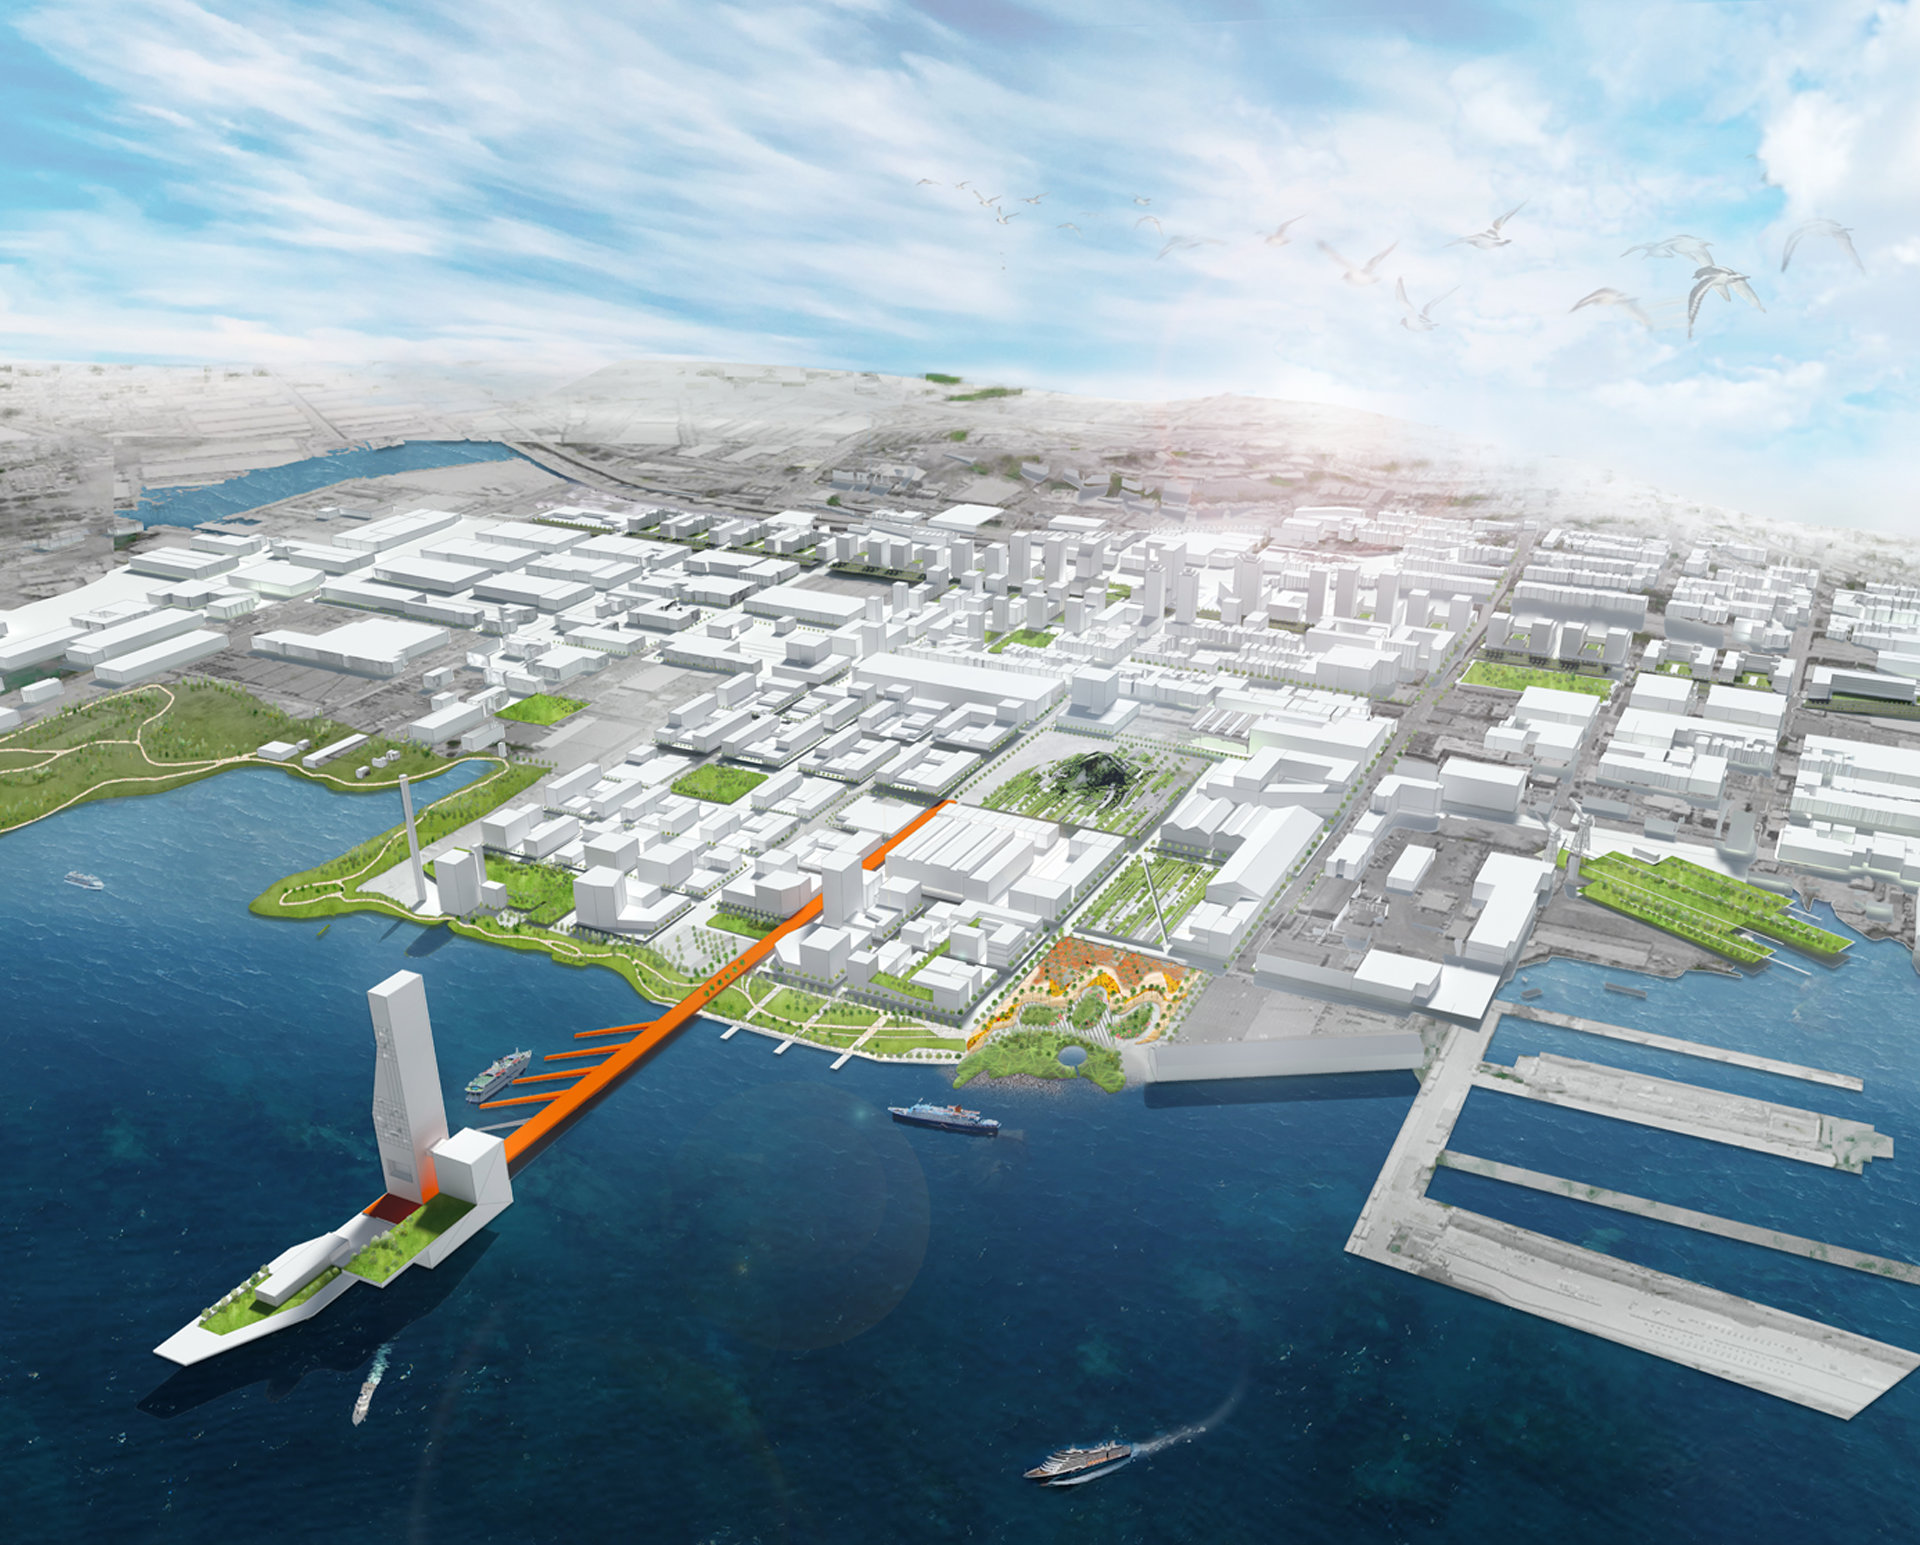 旧金山 Pier70 码头区域更新与可持续城市设计